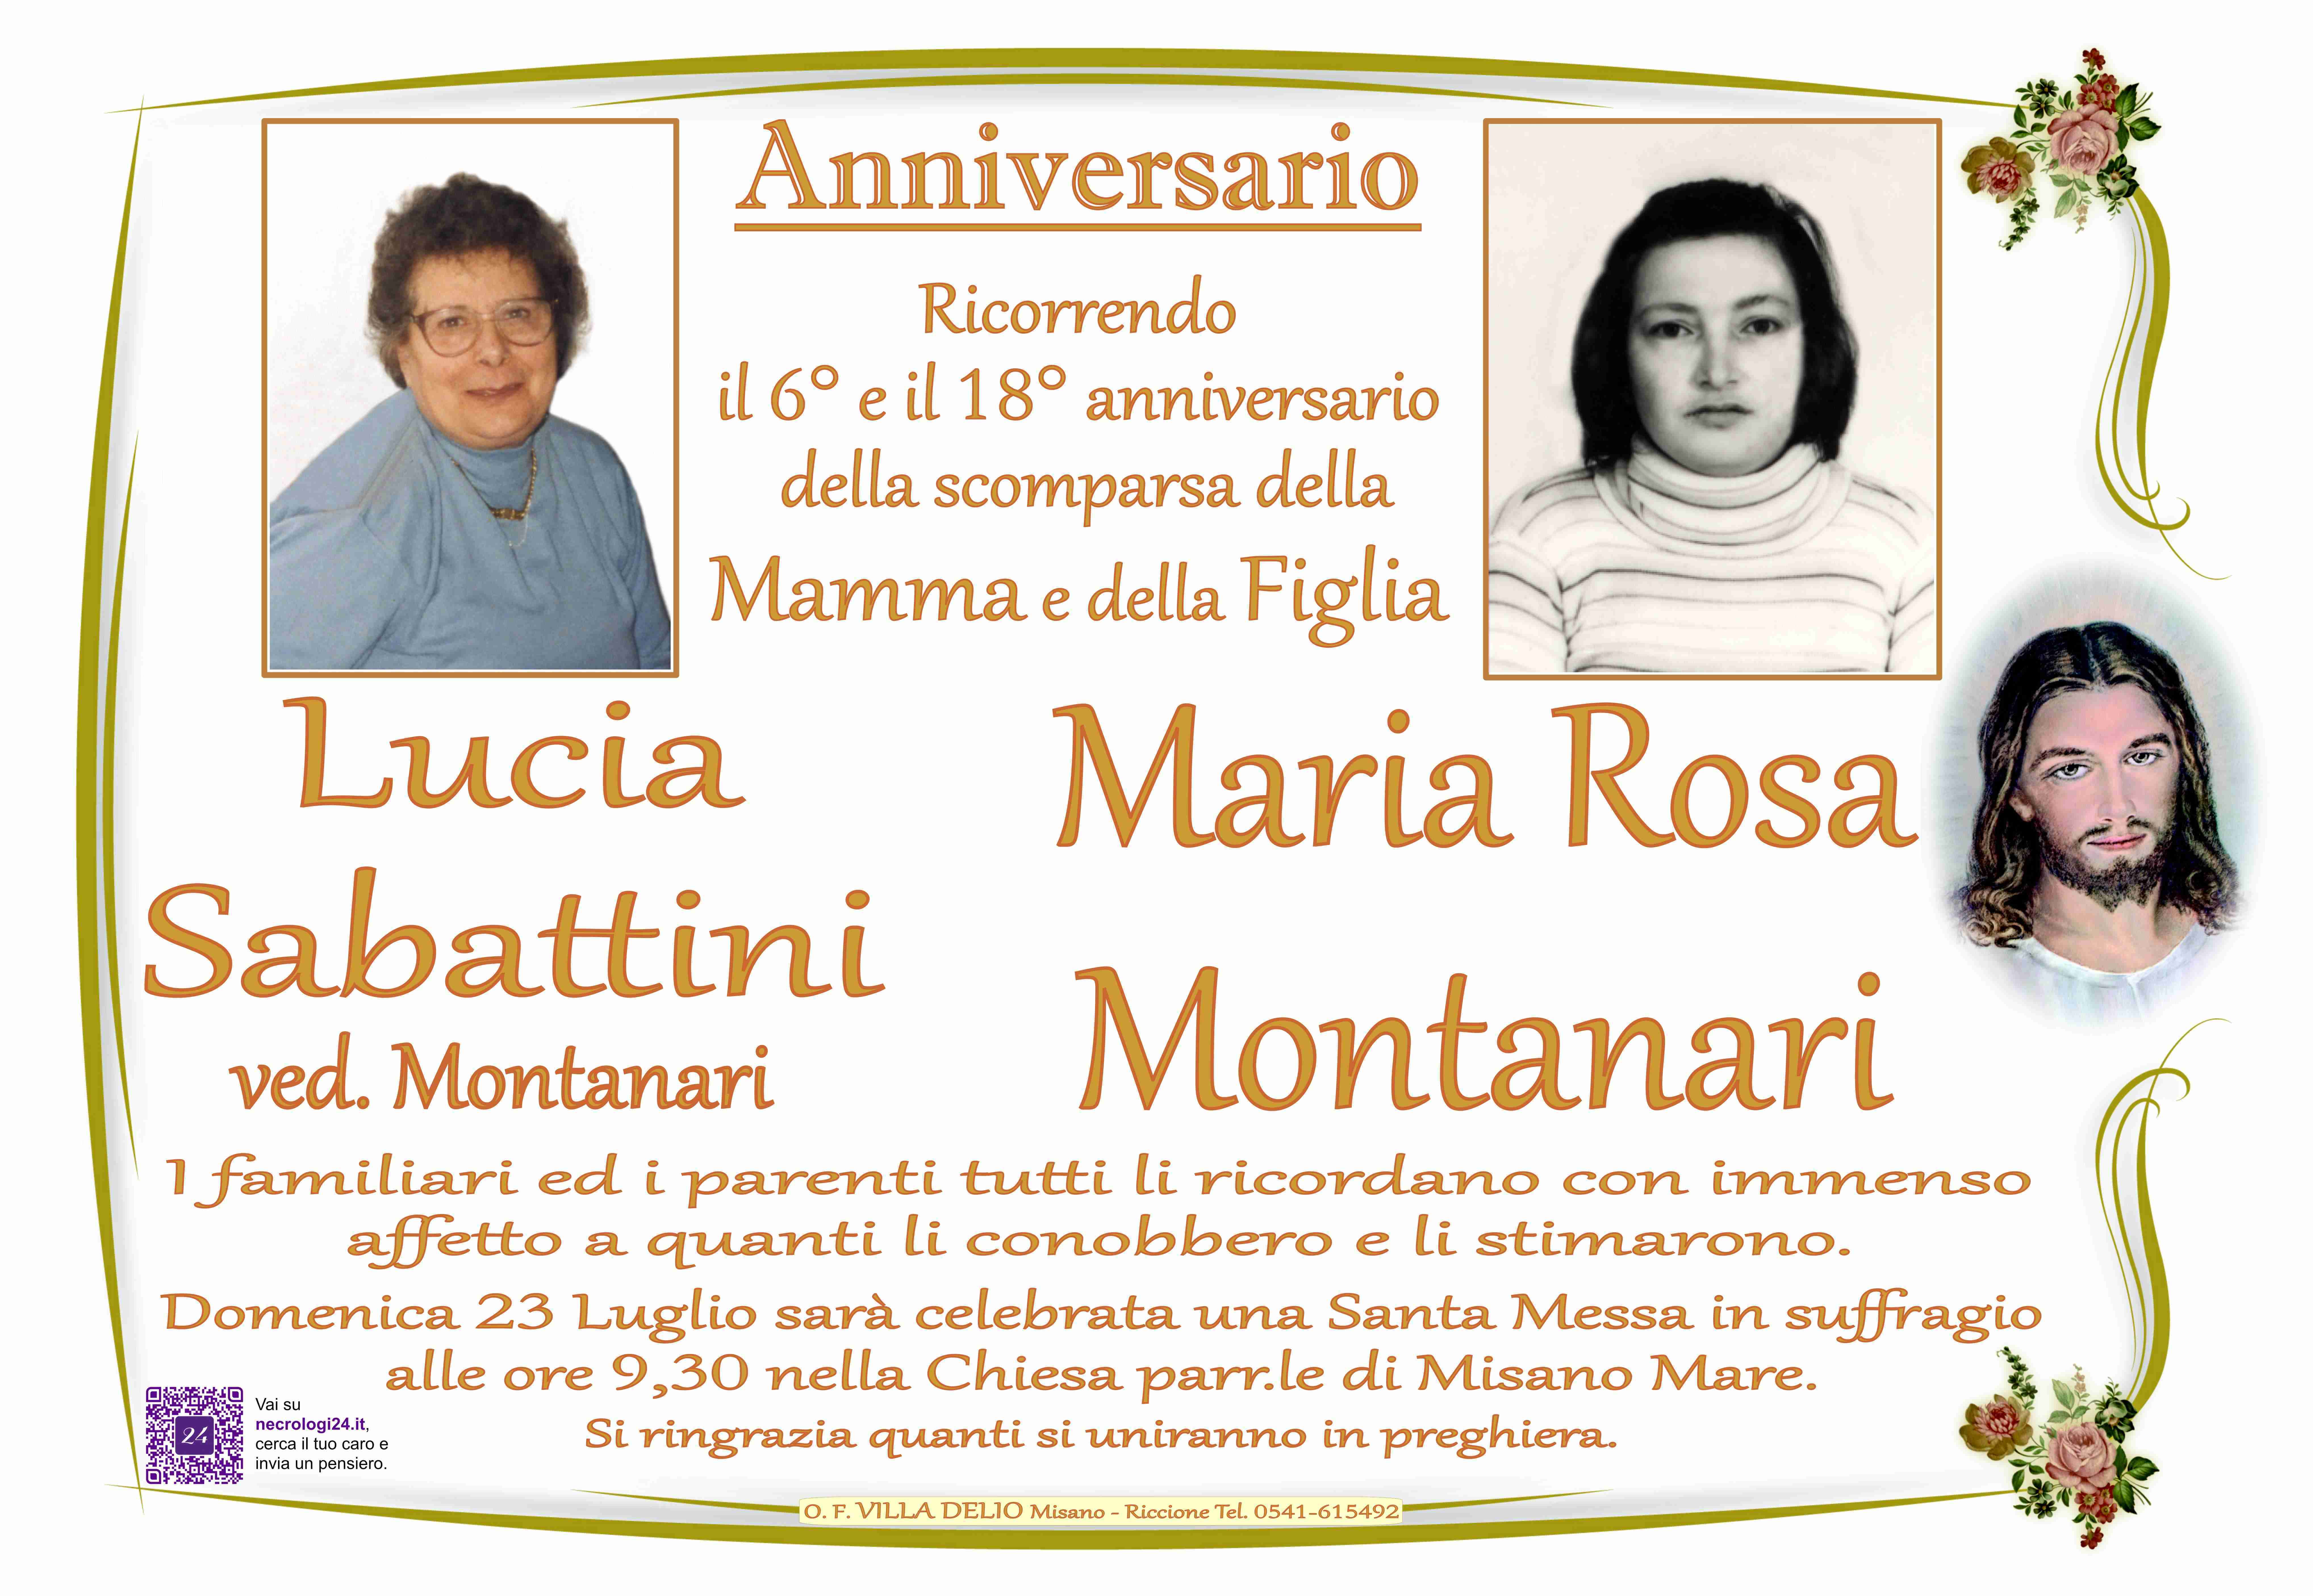 Lucia Sabattini e Maria Rosa Montanari